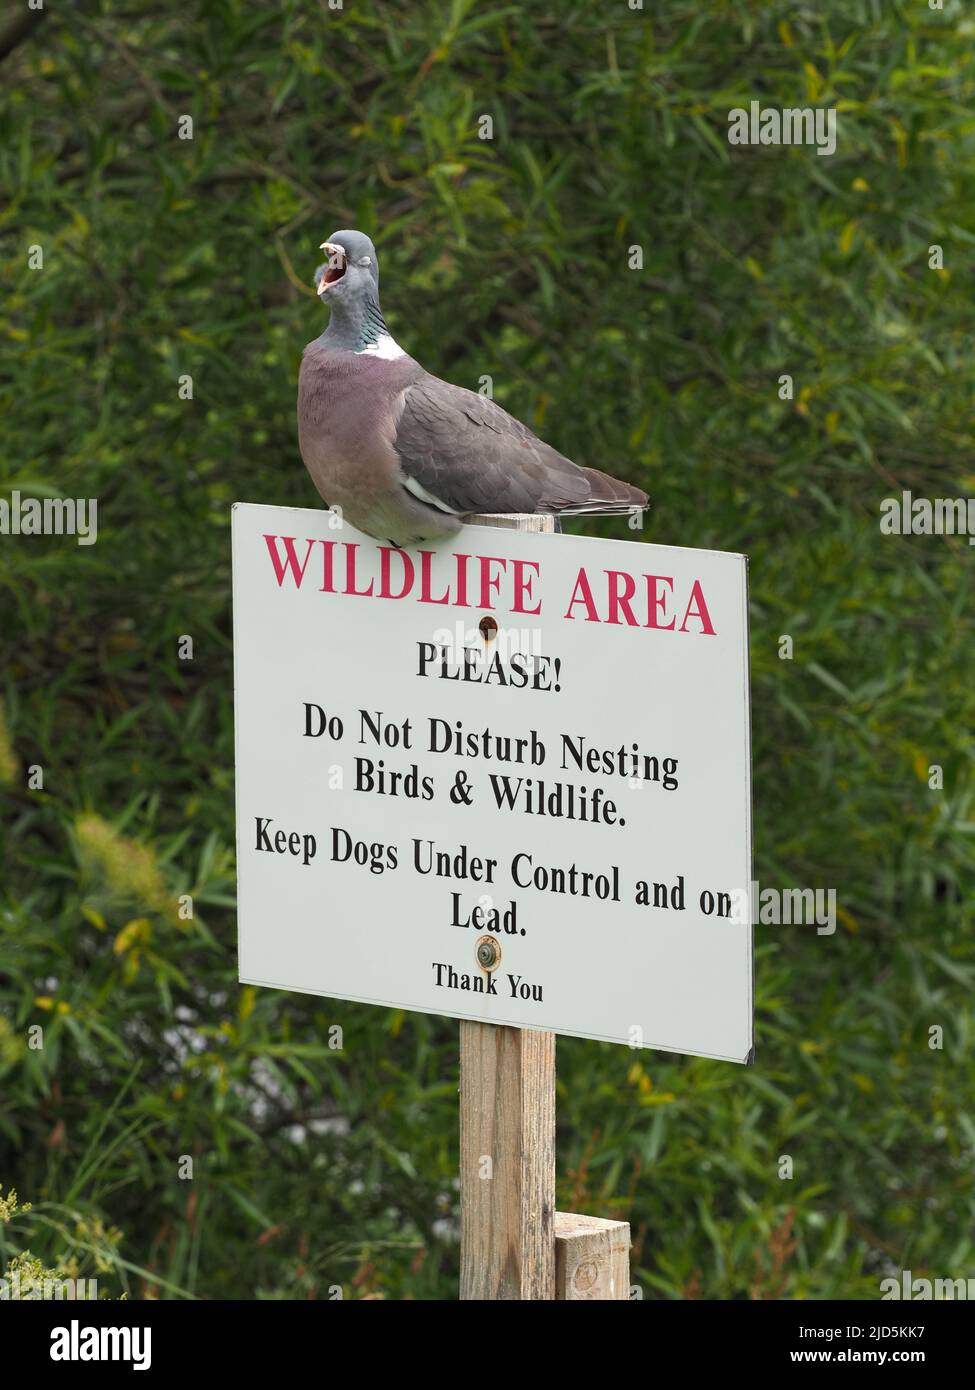 Comune Wood Pigeon yawning mentre su un segno non disturbare la fauna selvatica, vicino a una riva del fiume. Alberi verdi e fogliame sullo sfondo. Foto Stock